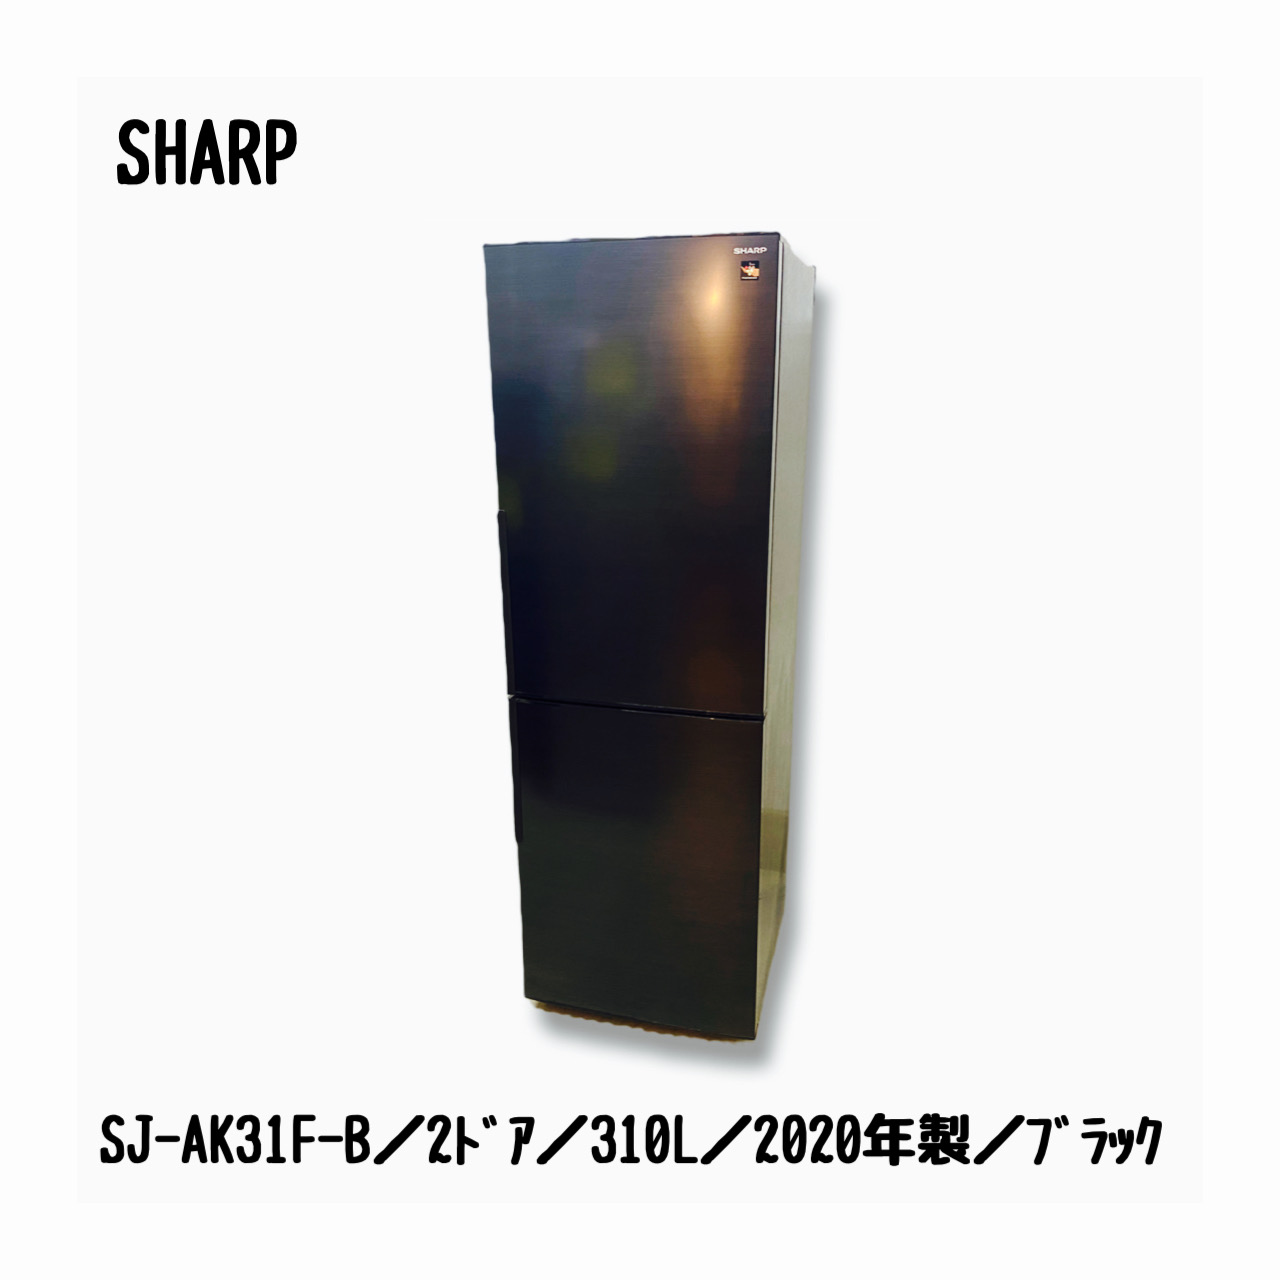 シャープ SHARP 冷蔵庫 ブラック系 SJ-AK31G-B - 冷蔵庫